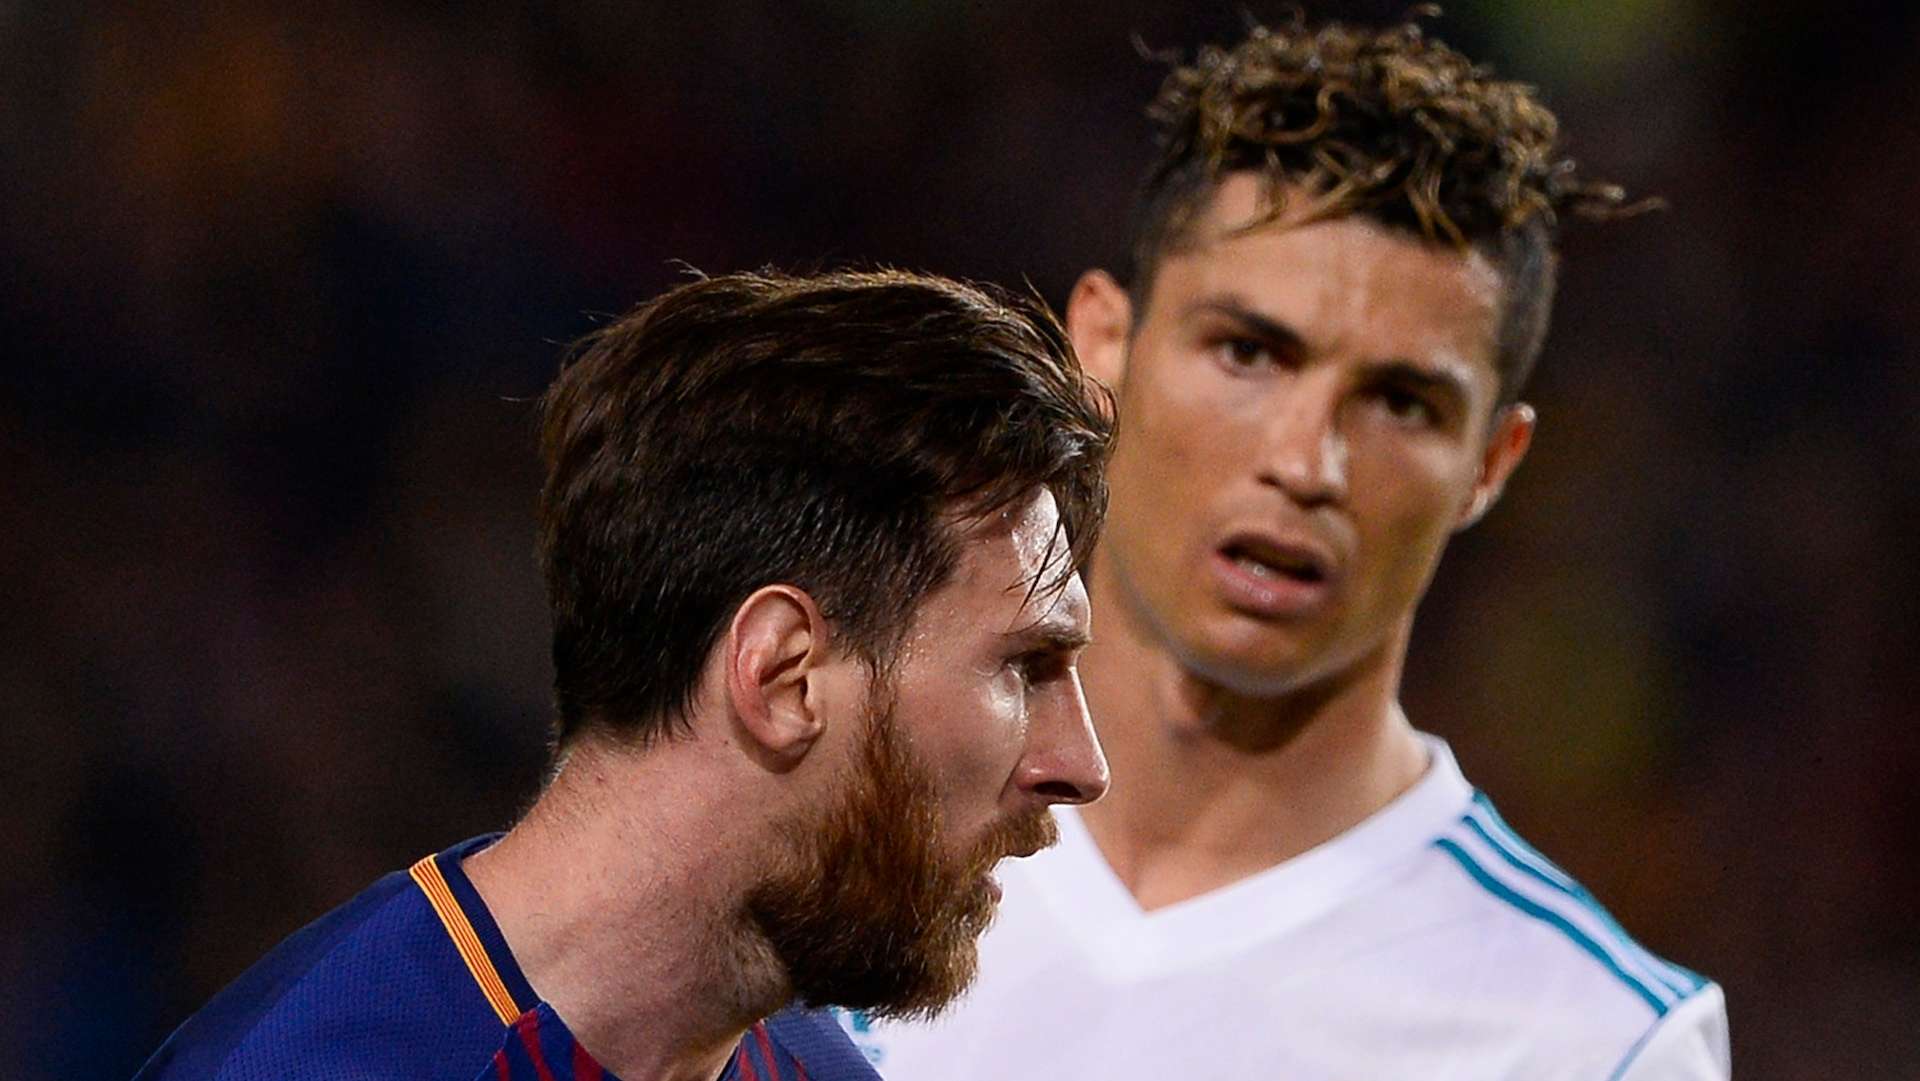 Lionel Messi & Cristiano Ronaldo